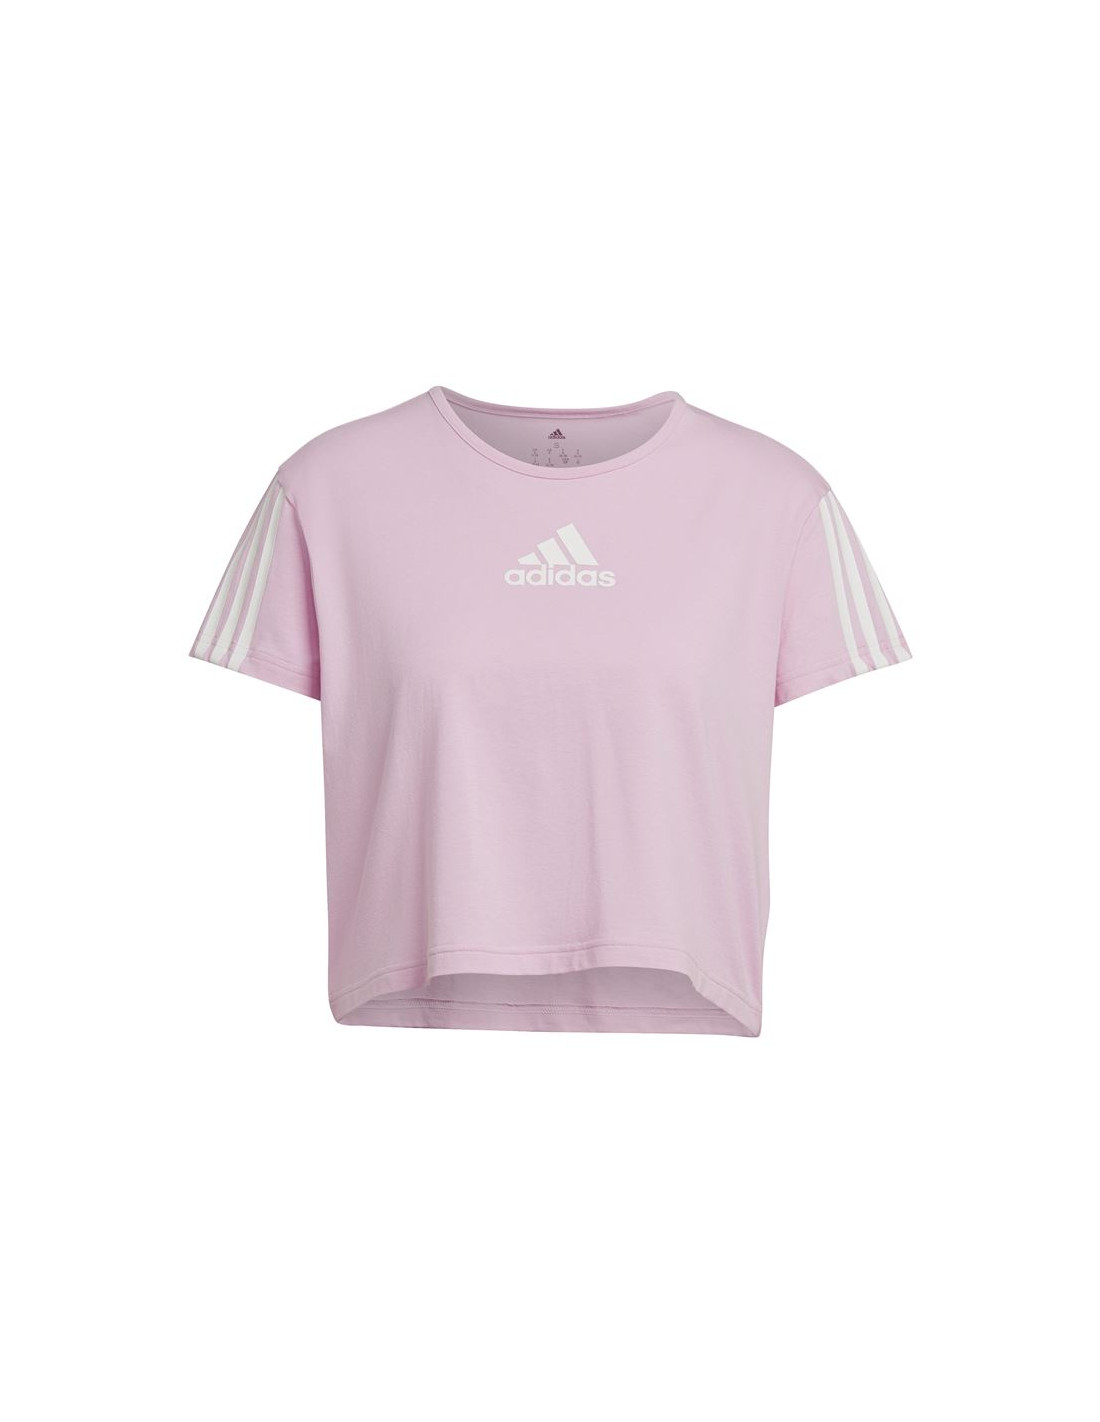 Camiseta adidas aeroready mujer pink